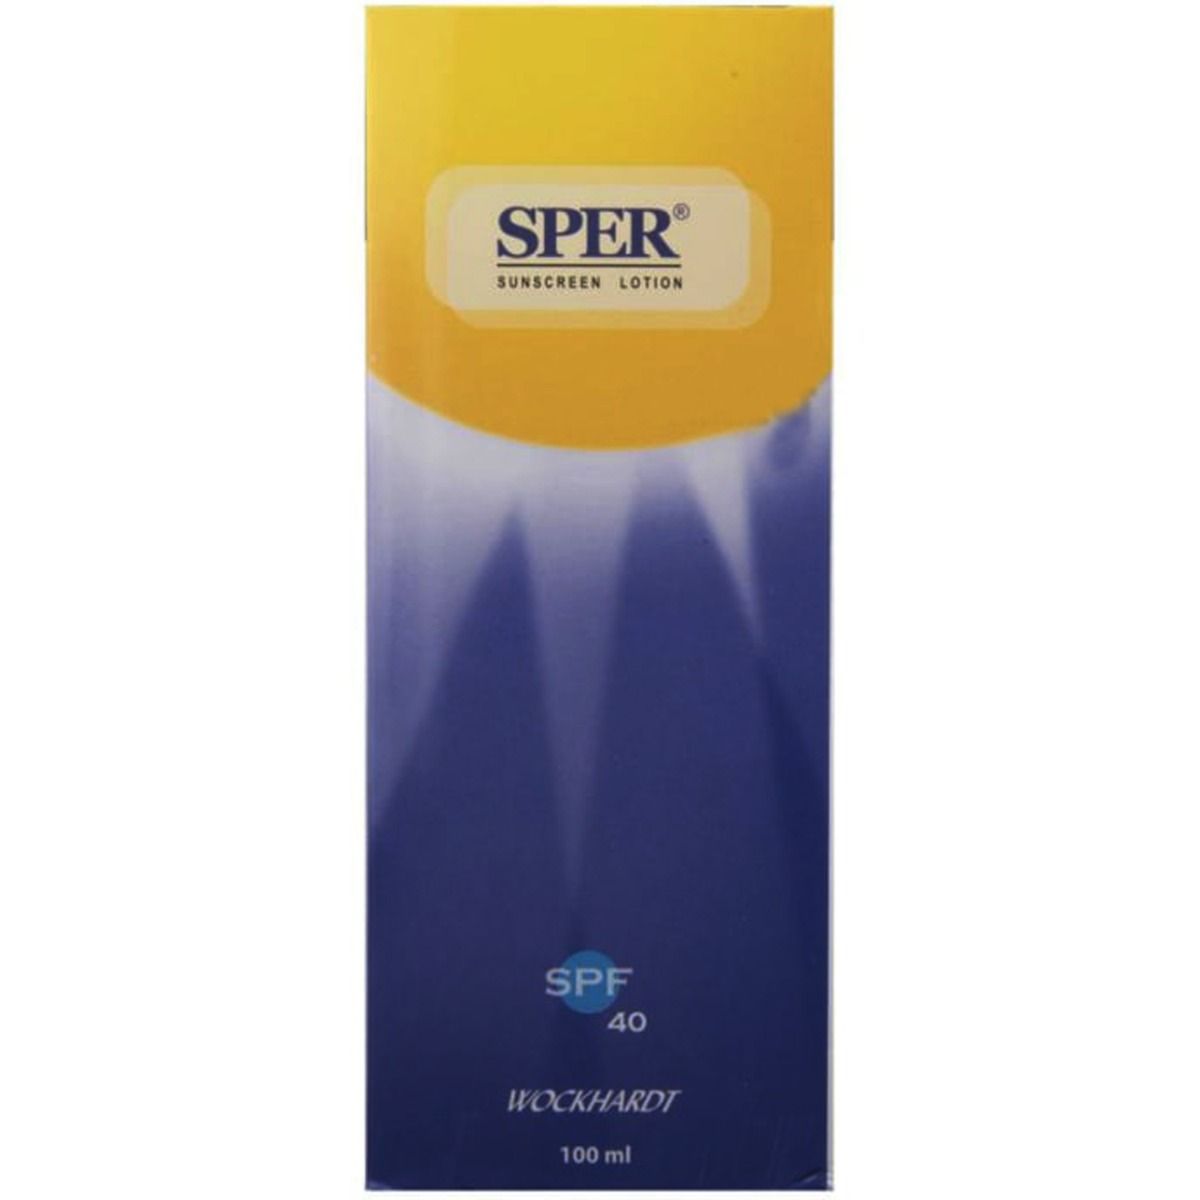 Buy Sper Sunscreen SPF 40 Lotion, 100 ml Online